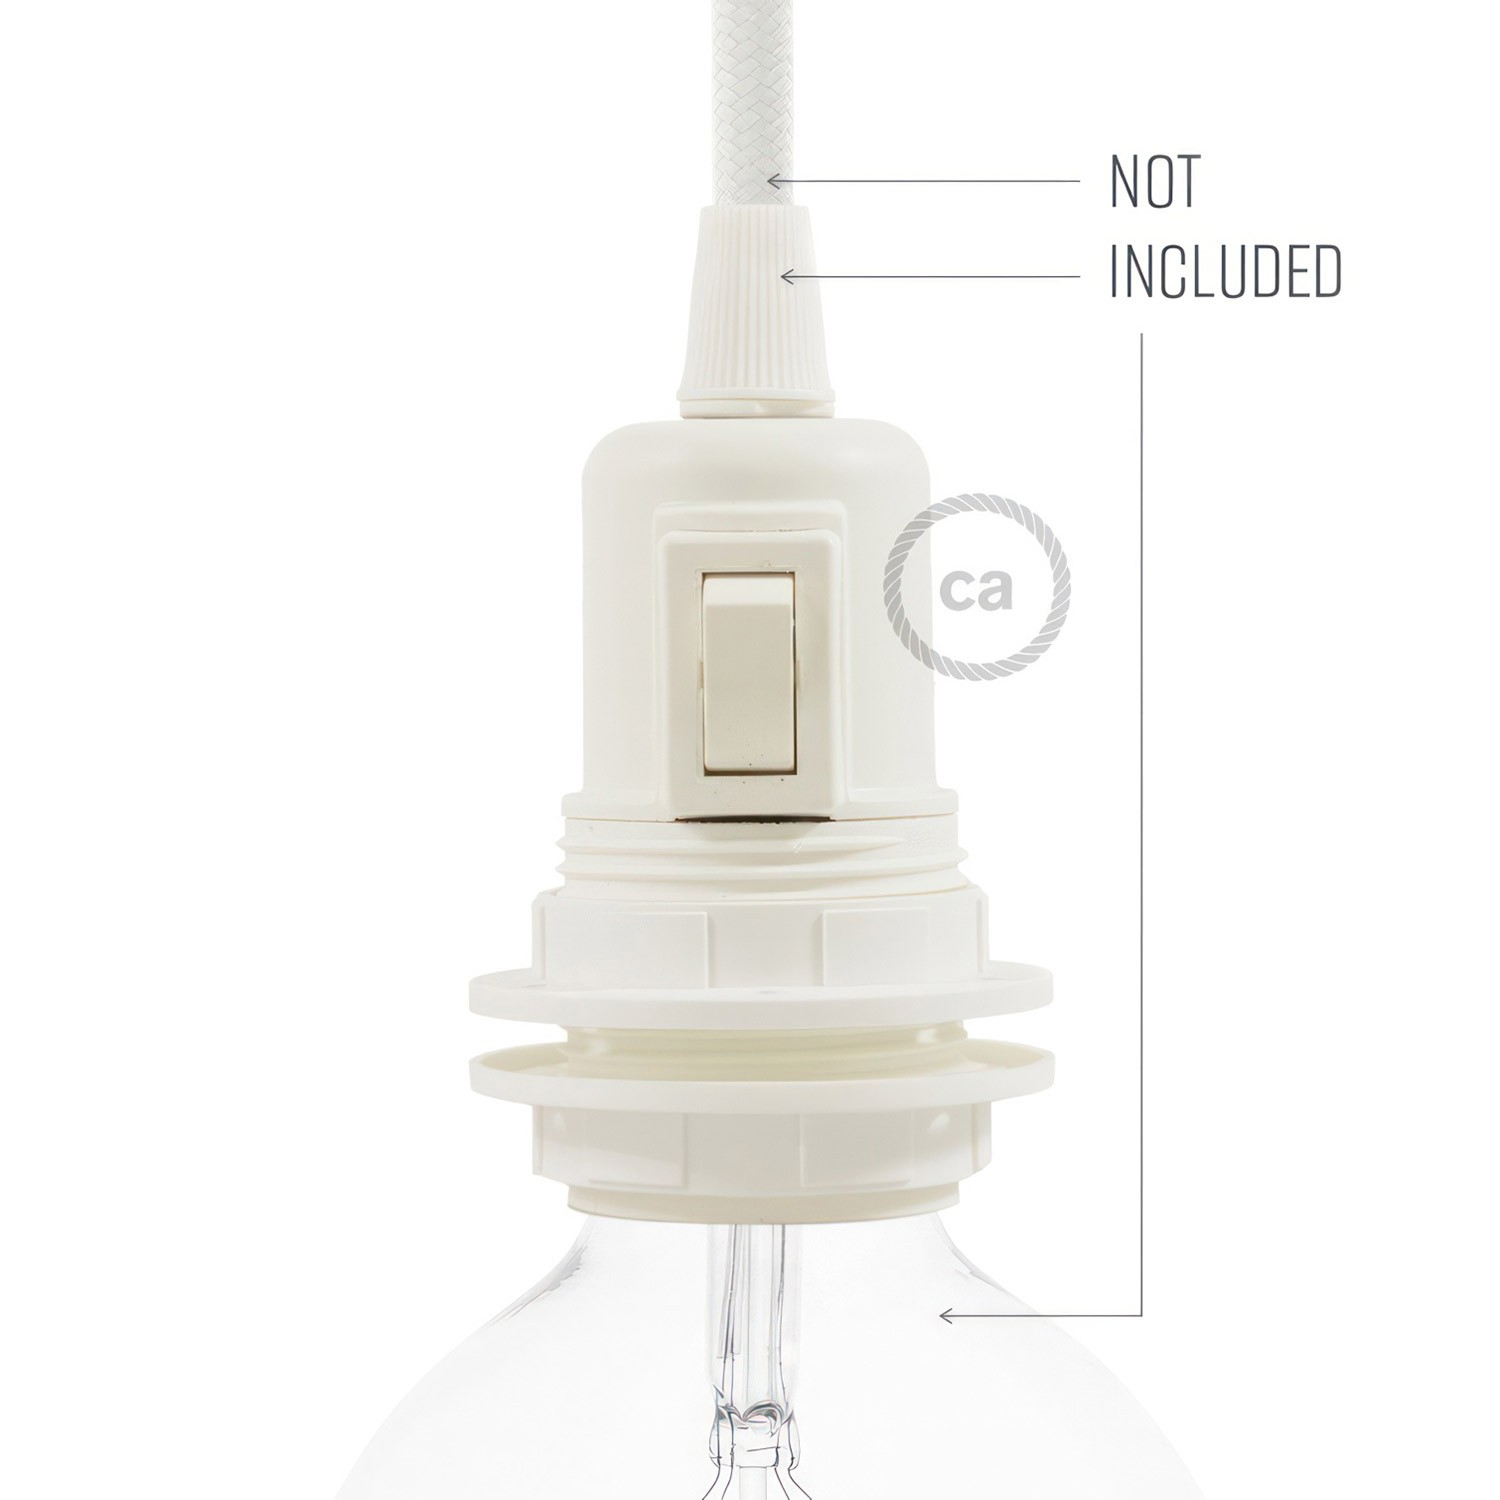 Kit lamphållare E27 i termoplast med dubbel skärmring för lampskärm och strömbrytare